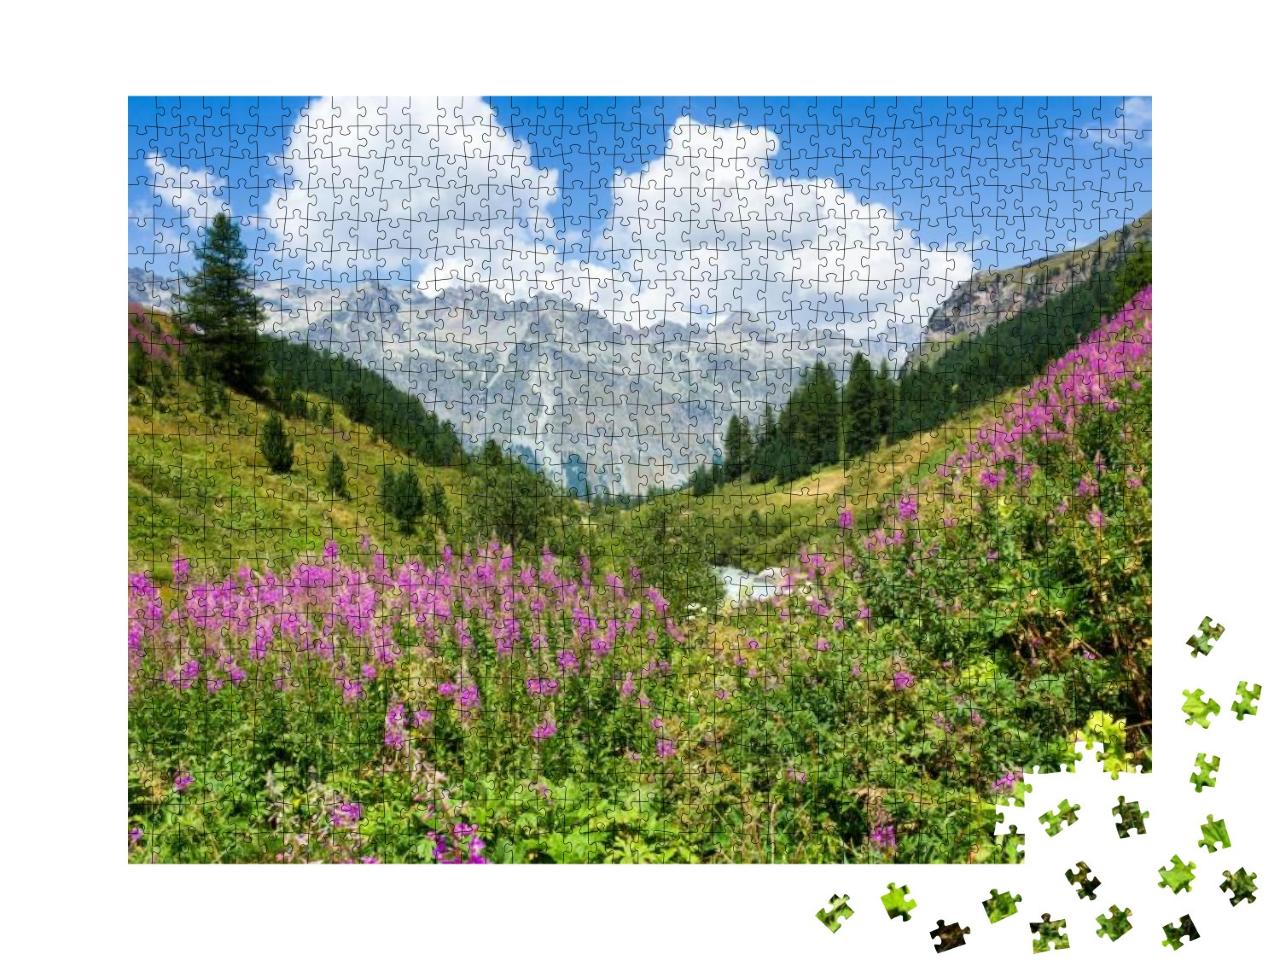 Puzzle 1000 Teile „Wunderschönes Oberengadin in den Schweizer Alpen“